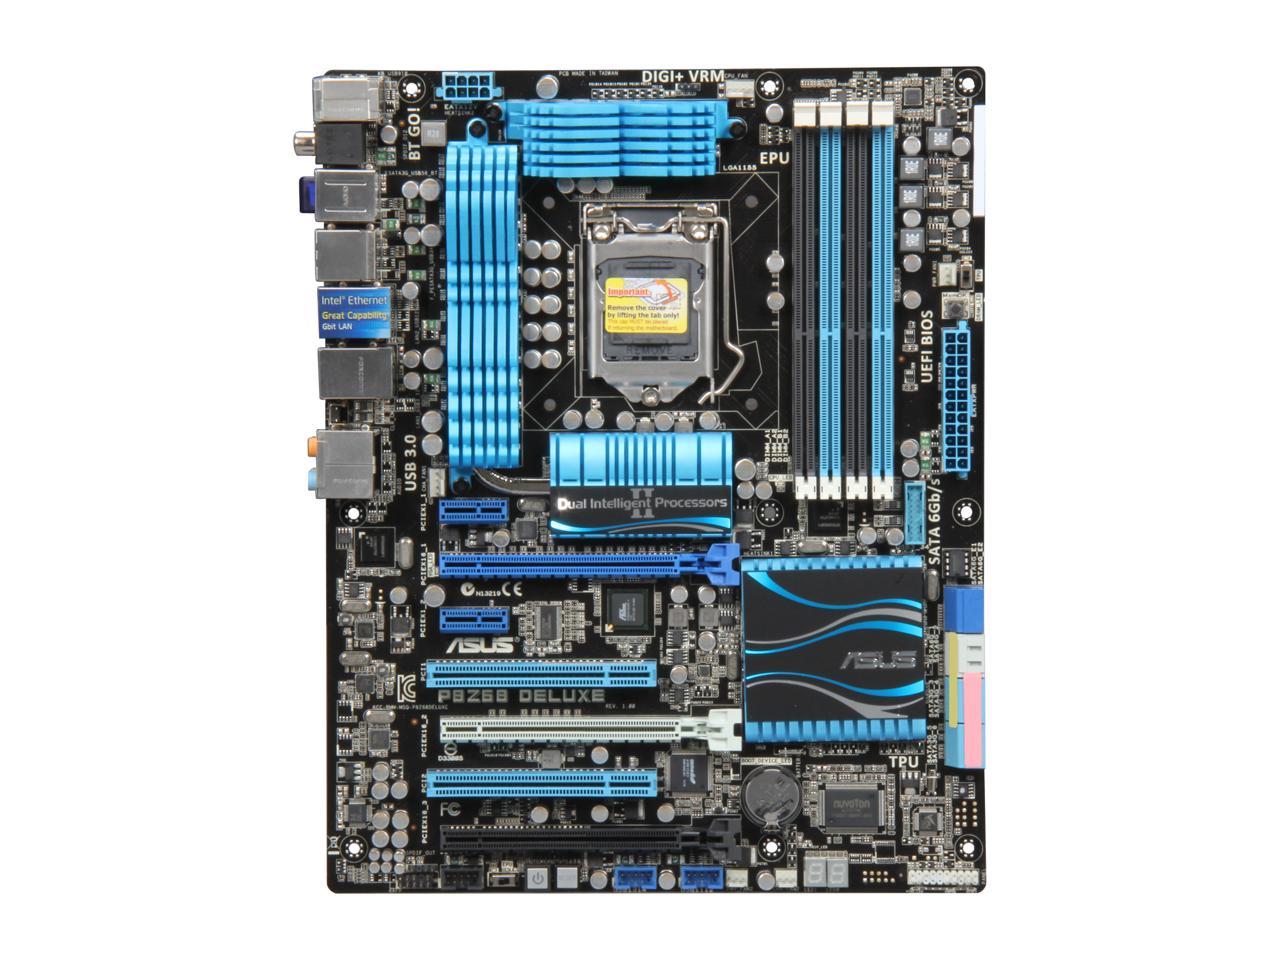 ASUS P8Z68 Deluxe LGA 1155 ATX Intel Motherboard with UEFI BIOS 